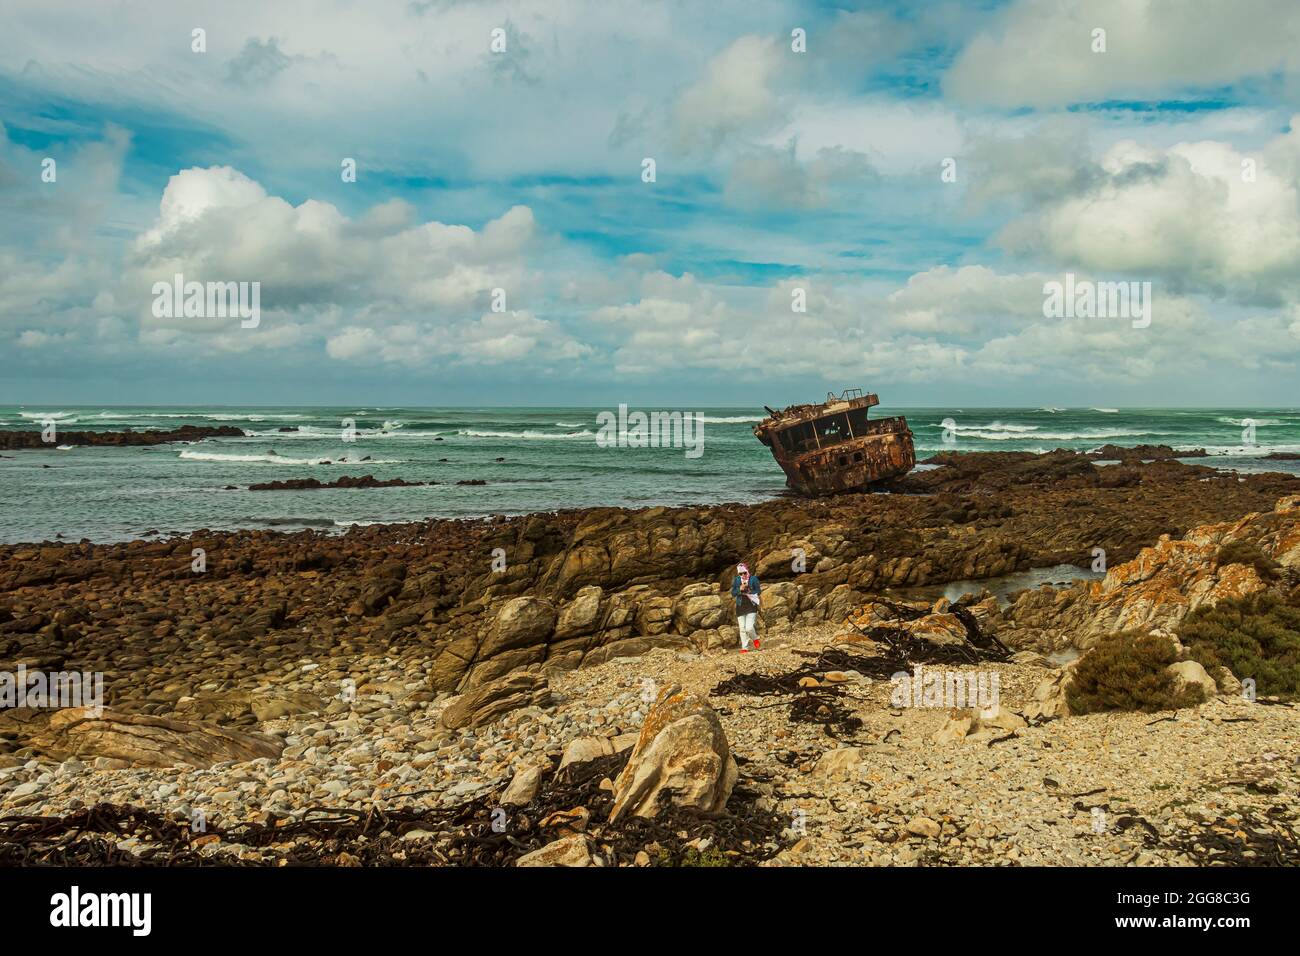 Aspra costa rocciosa con naufragio arrugginito di Meisho Maru No.38 a Capo Agulhas in Sud Africa che è il punto più meridionale del continente africano. Foto Stock